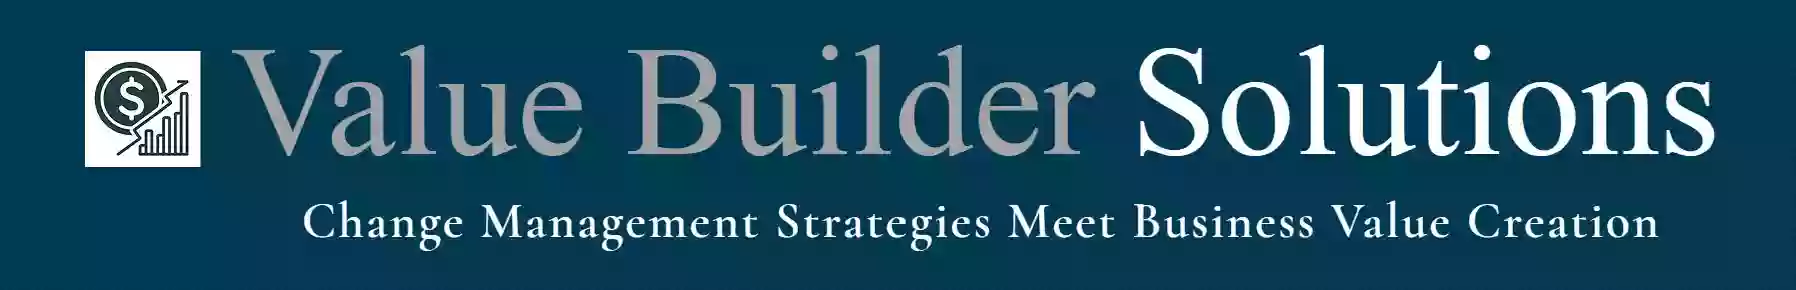 Value Builder Solutions Ltd